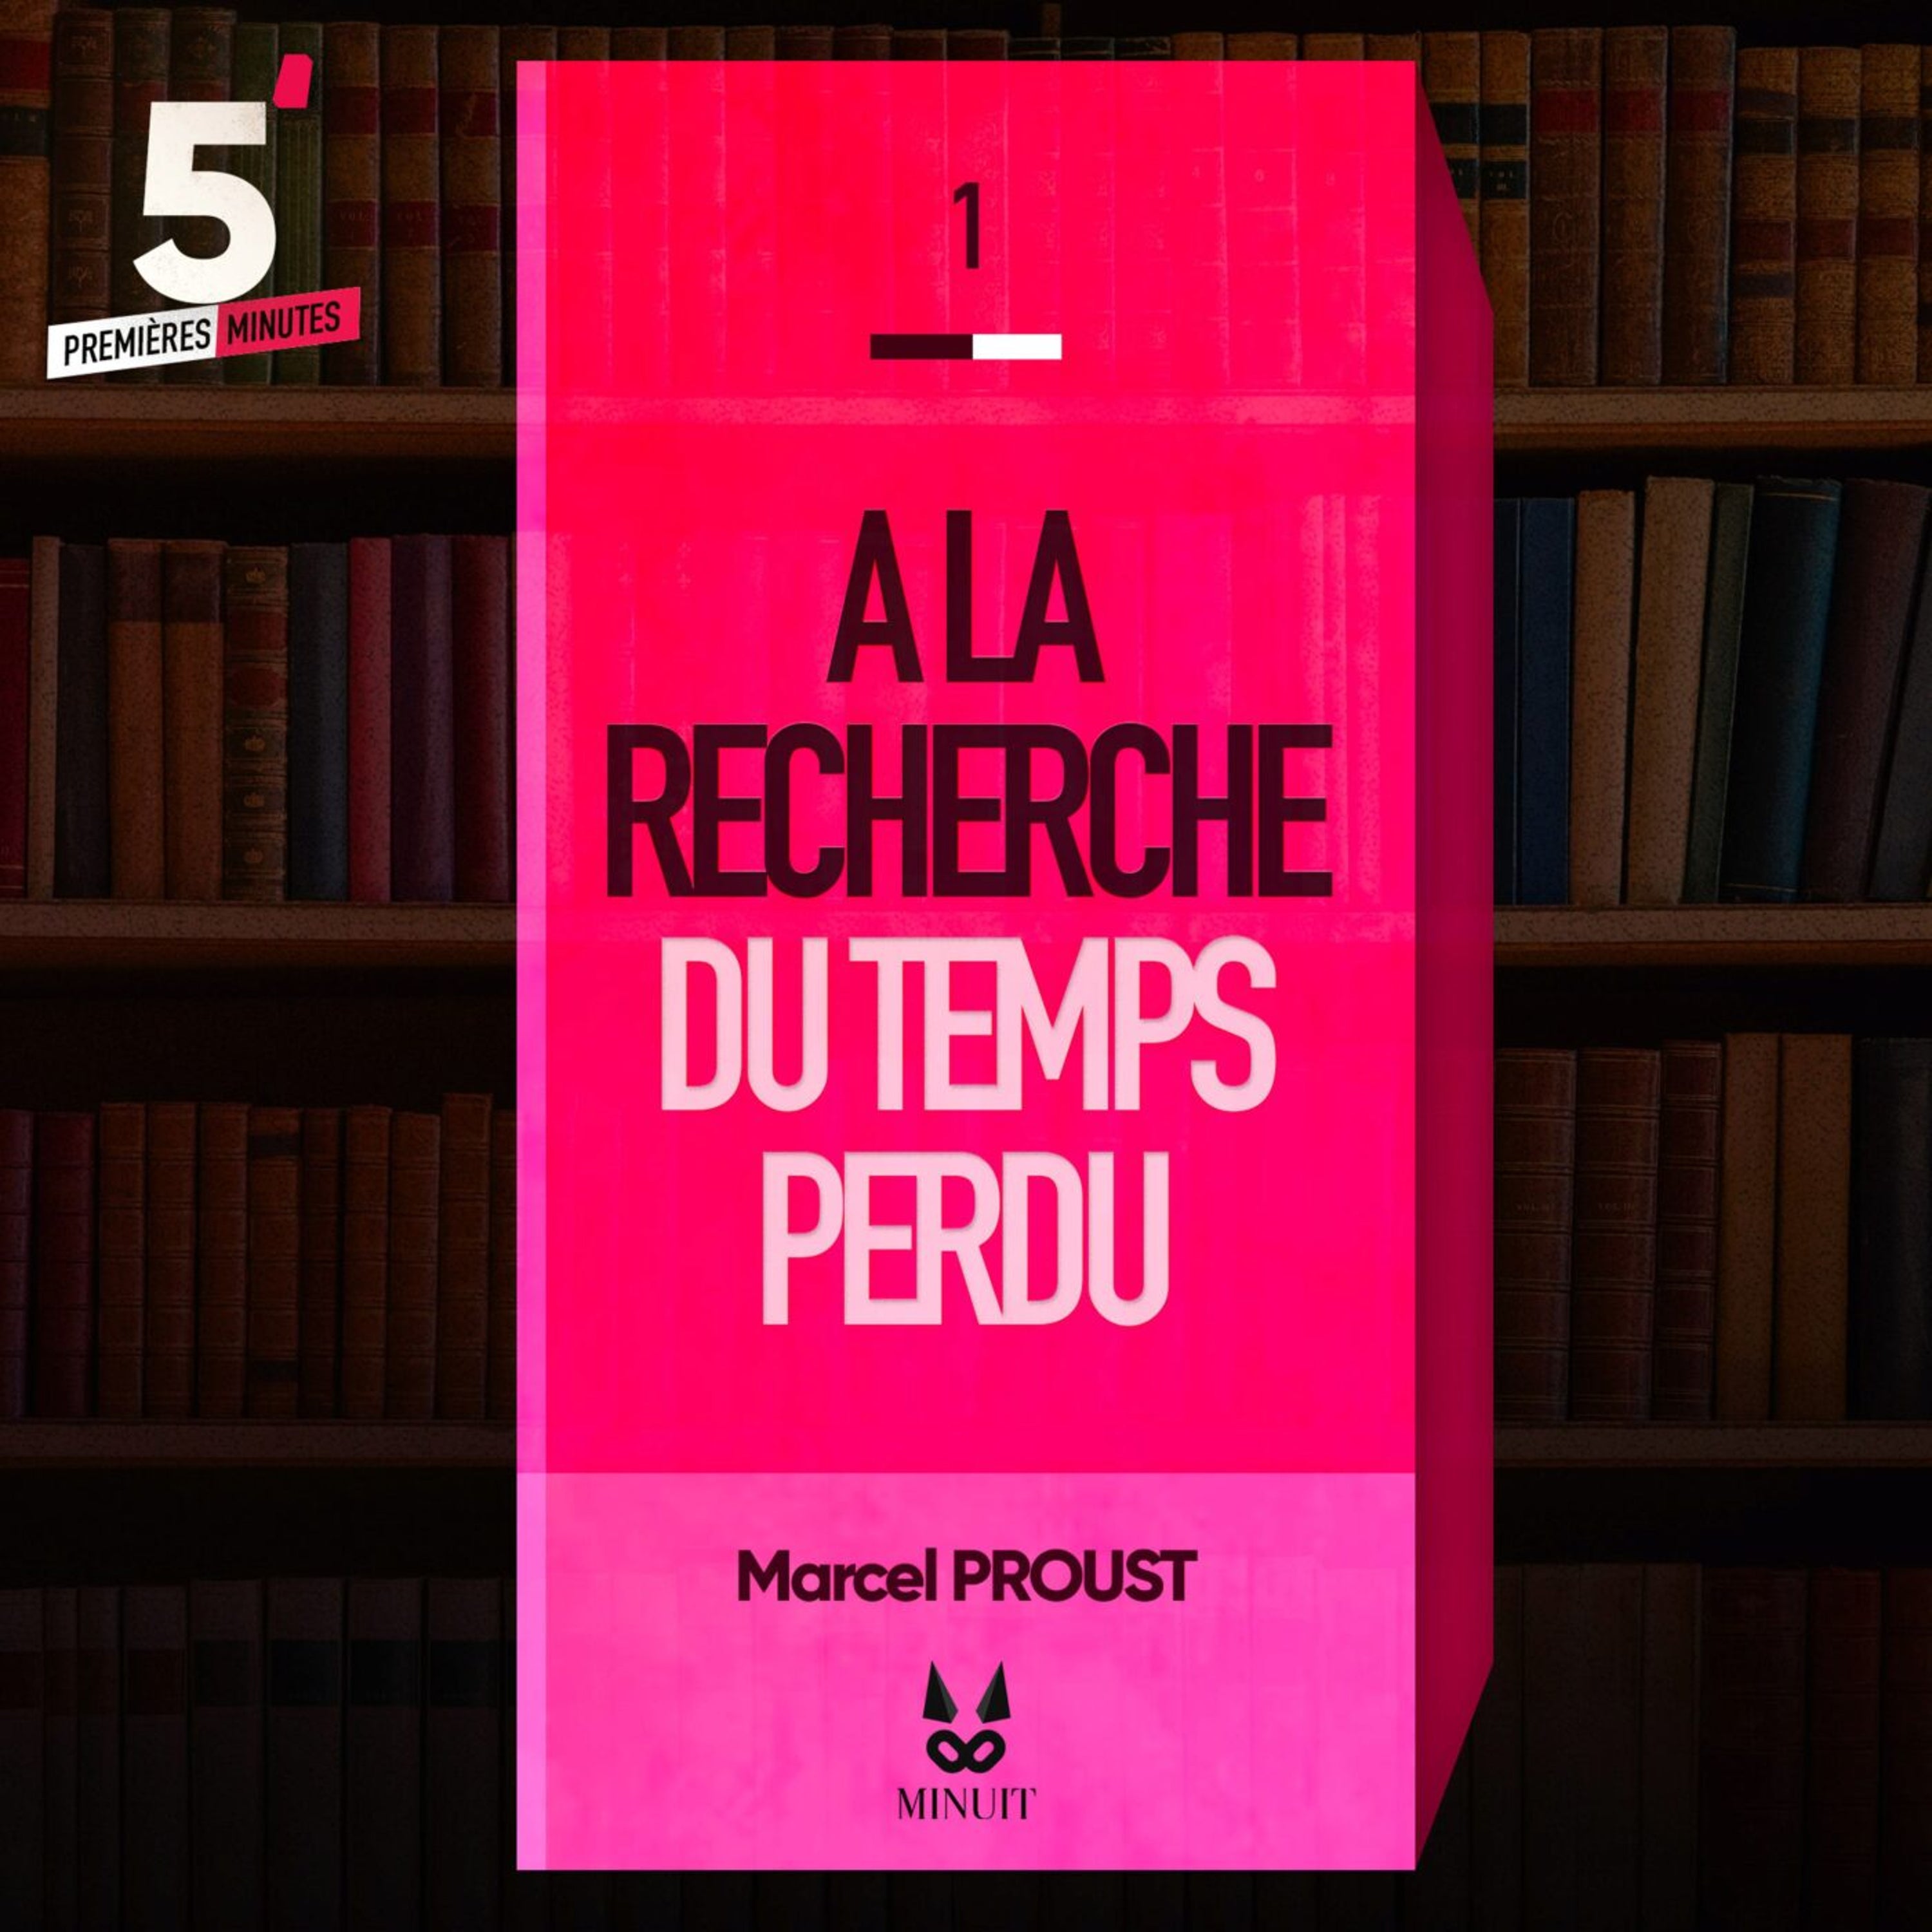 "A la Recherche du Temps perdu" • Marcel PROUST